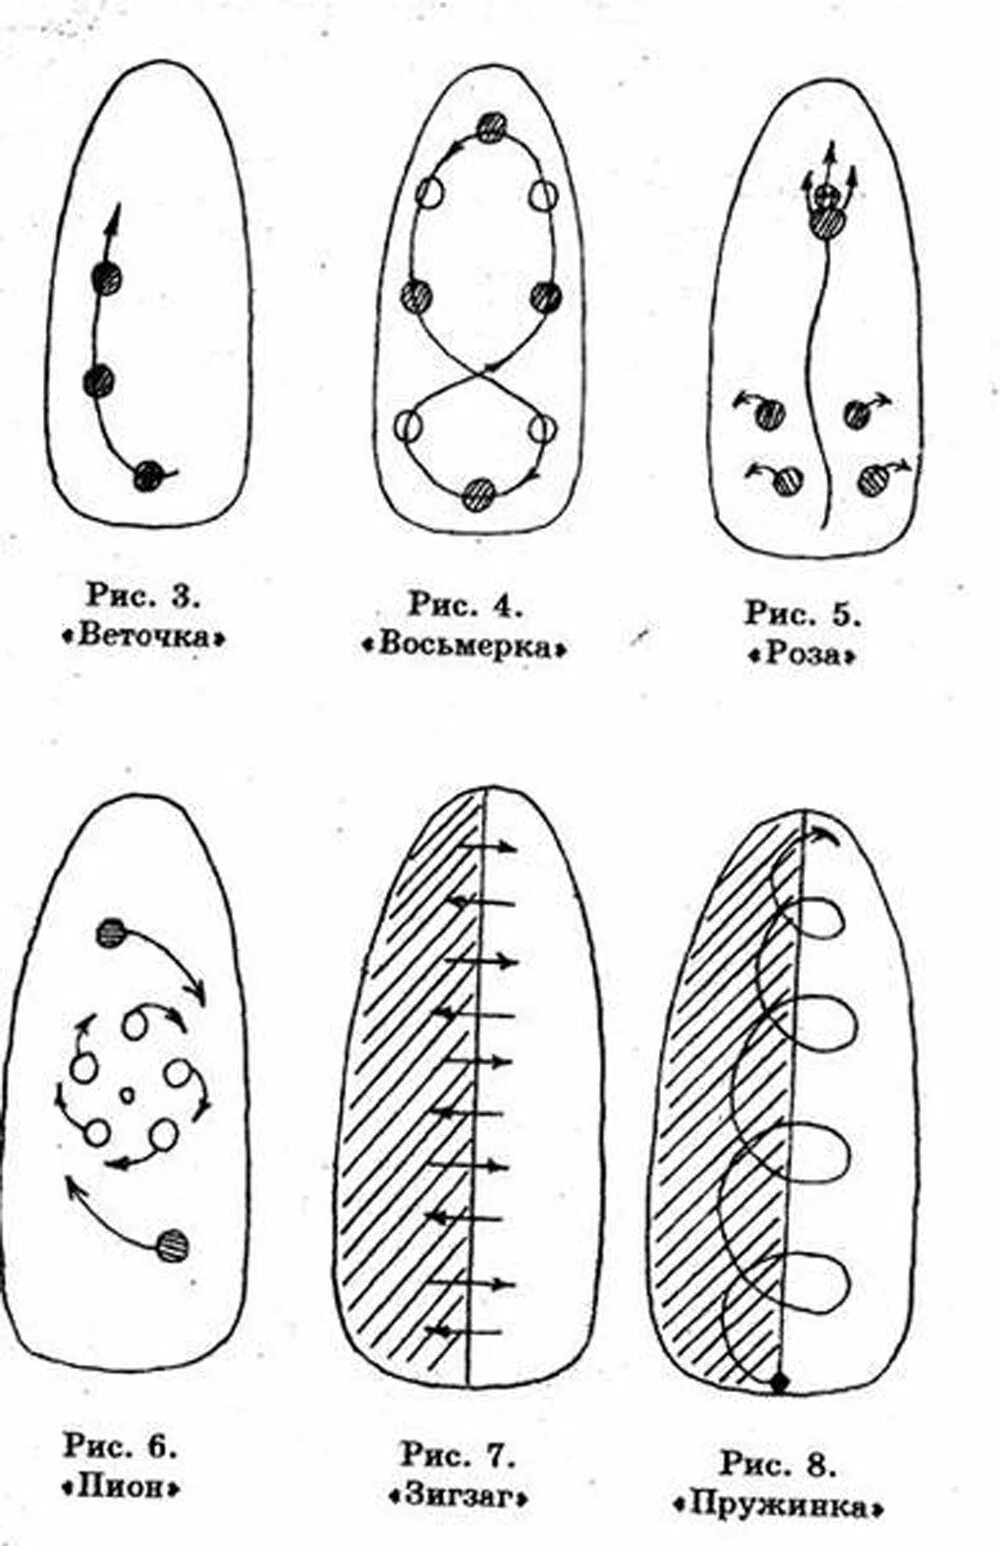 Как сделать рисунок на ногтях с помощью иголки. Рисунки на ногтях иголкой схемы. Дизайн иголкой на ногтях схемы. Схемы рисования на ногтях.